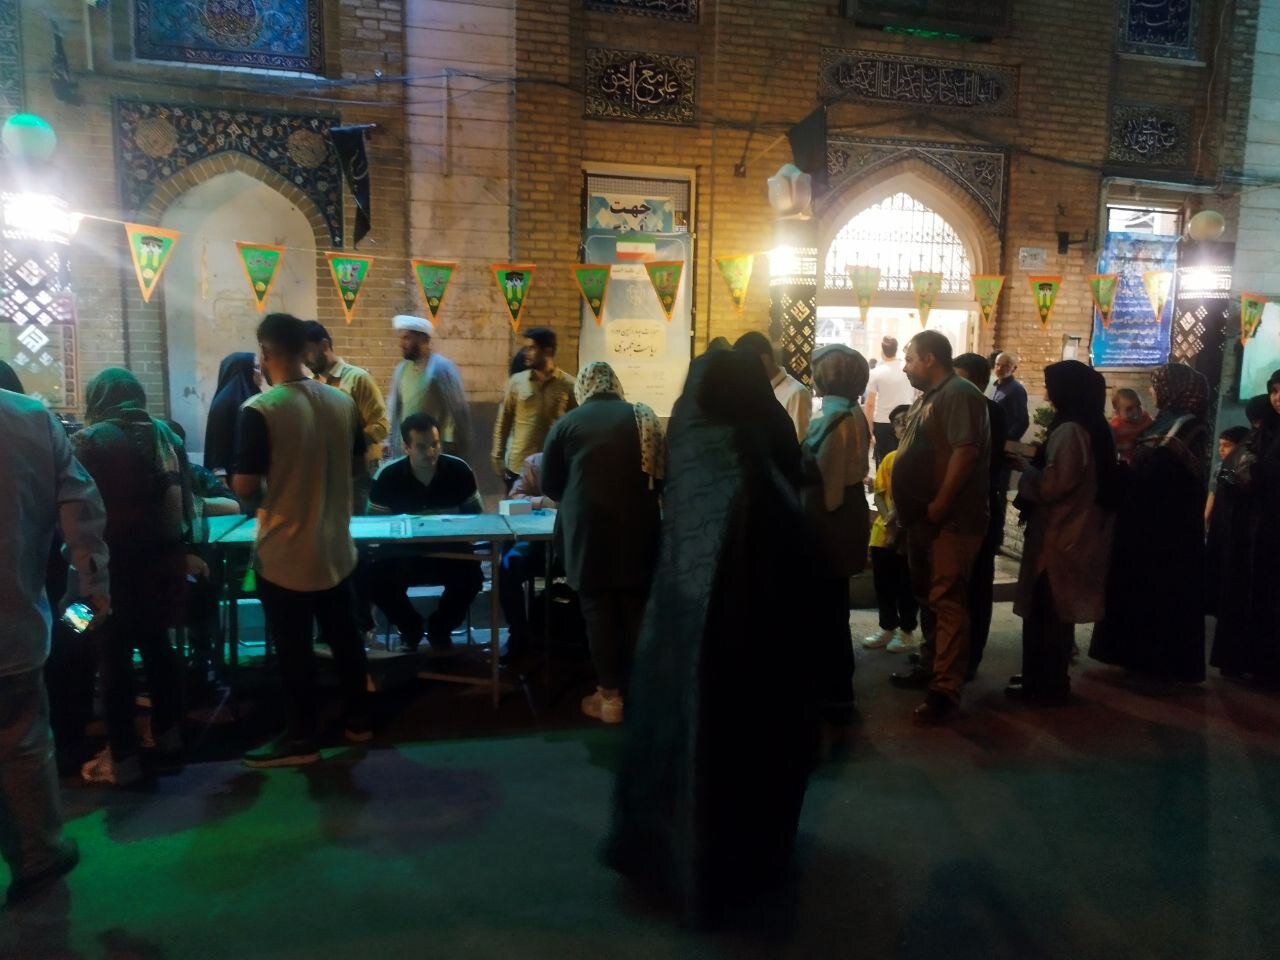 استقرار شعبه سیار اخذ رای خارج از مسجد لرزاده